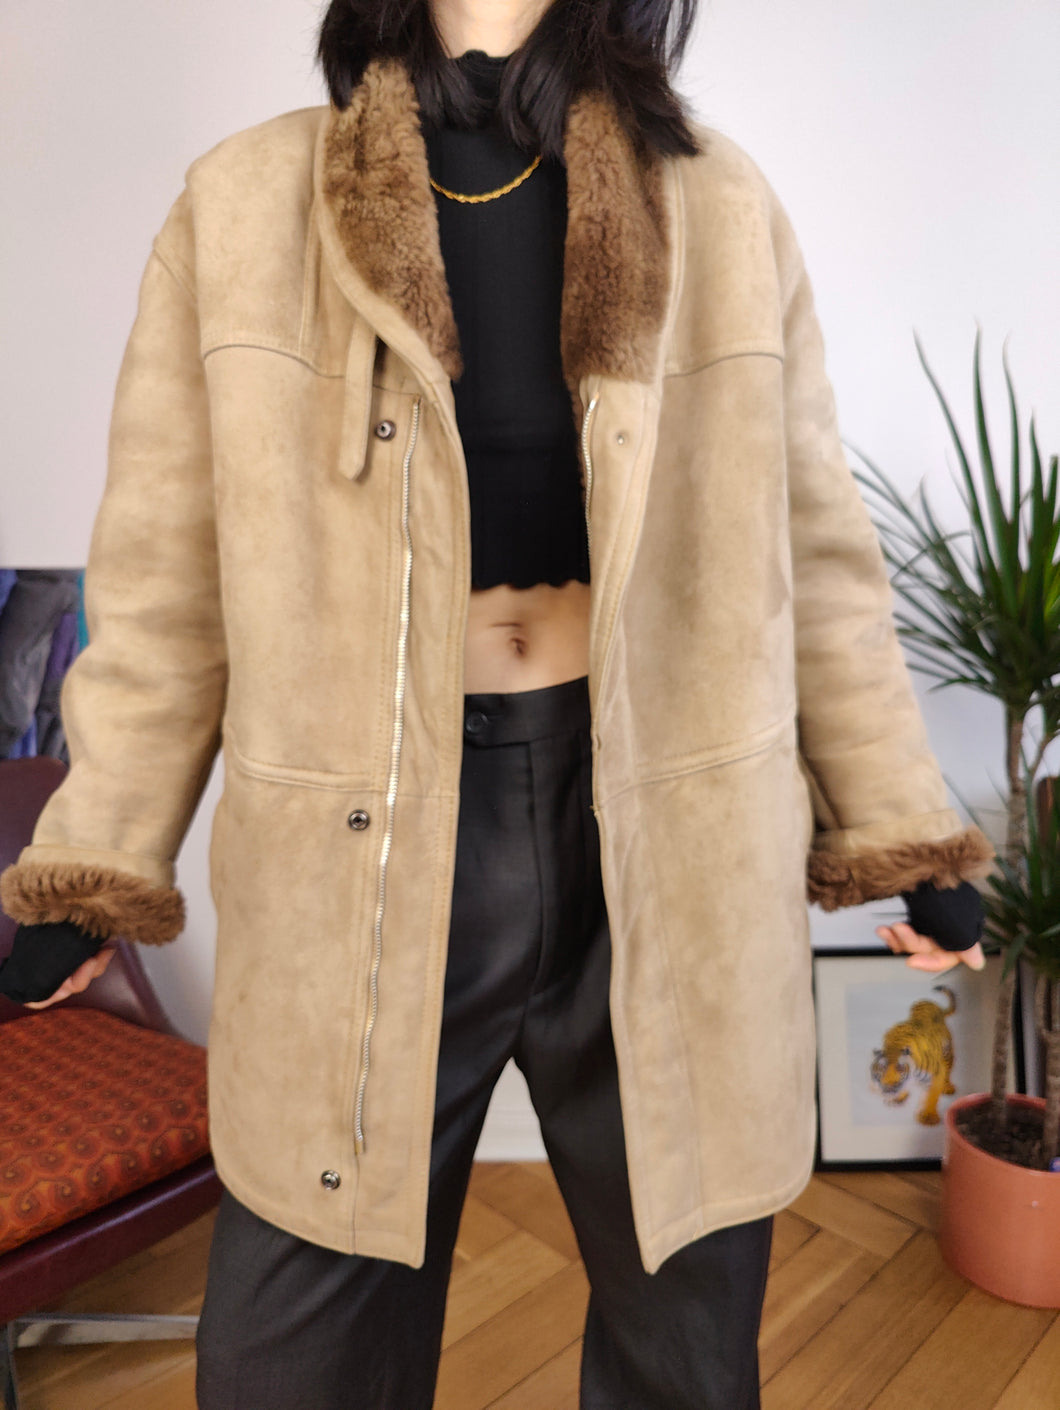 Vintage genuine shearling leather coat beige cream brown suede sheepskin lambskin sherpa winter IT46 S-M